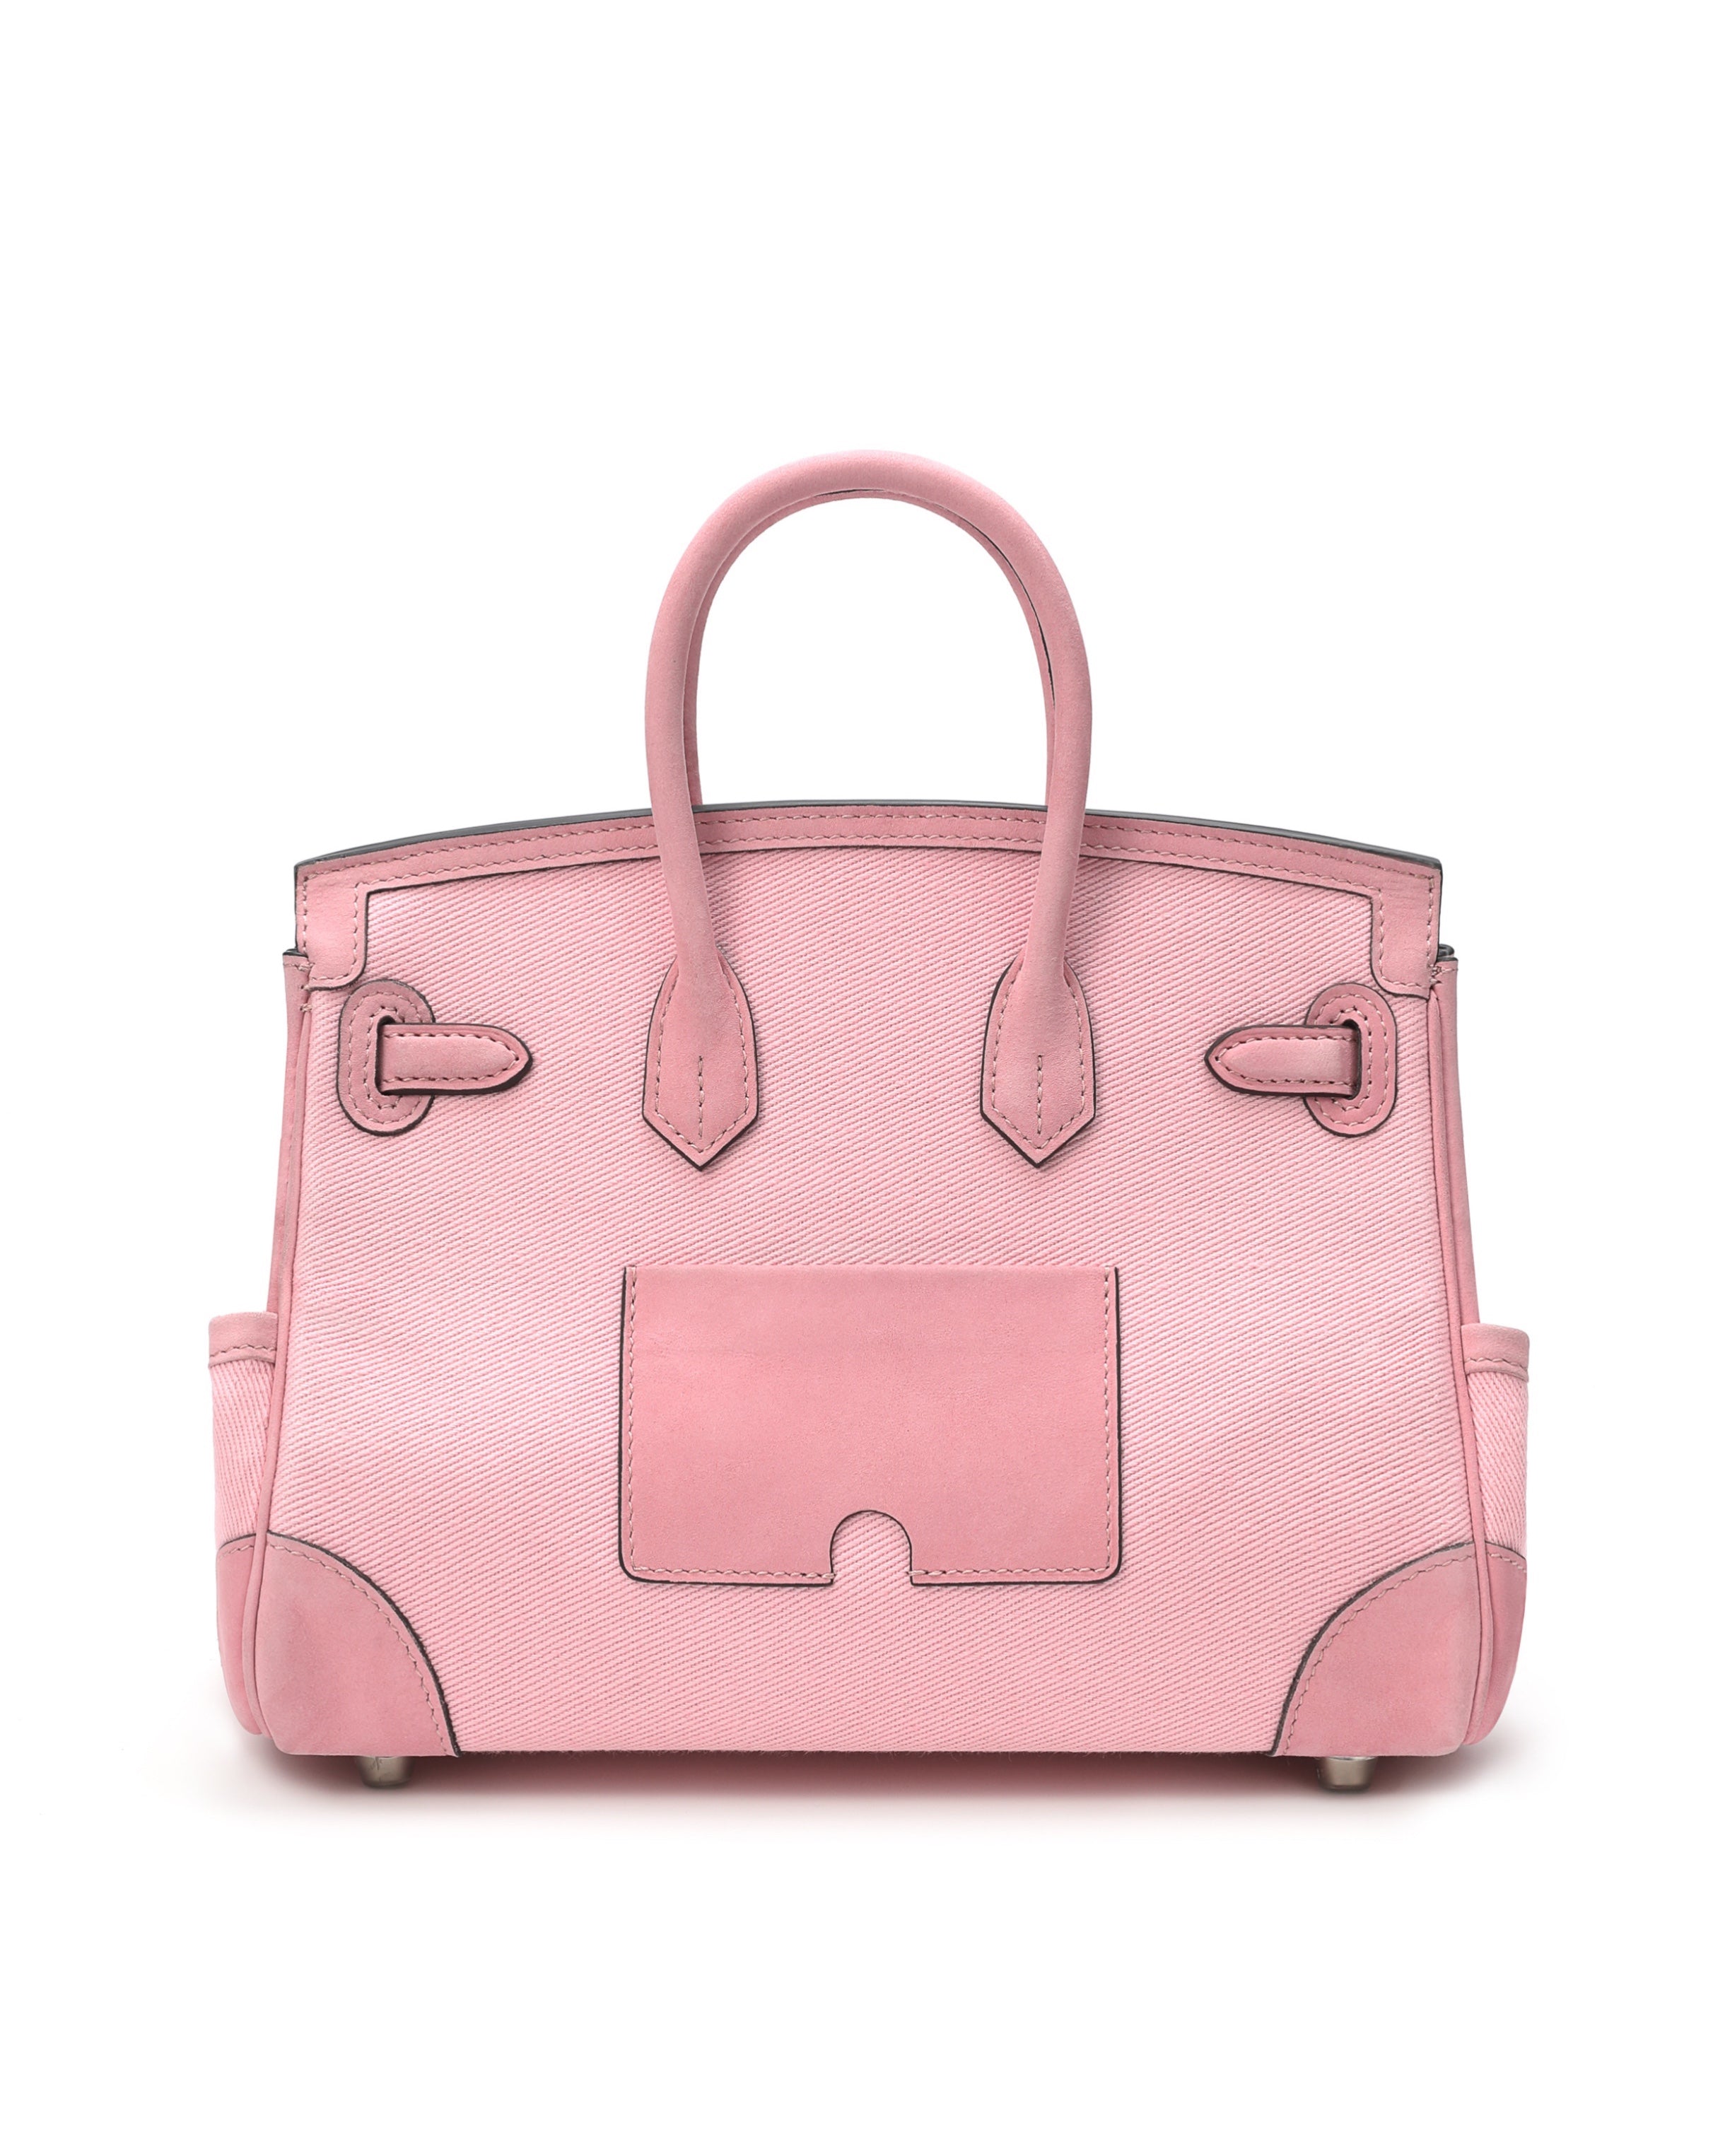 Travel Bag Cargo 25 Pink/Pink